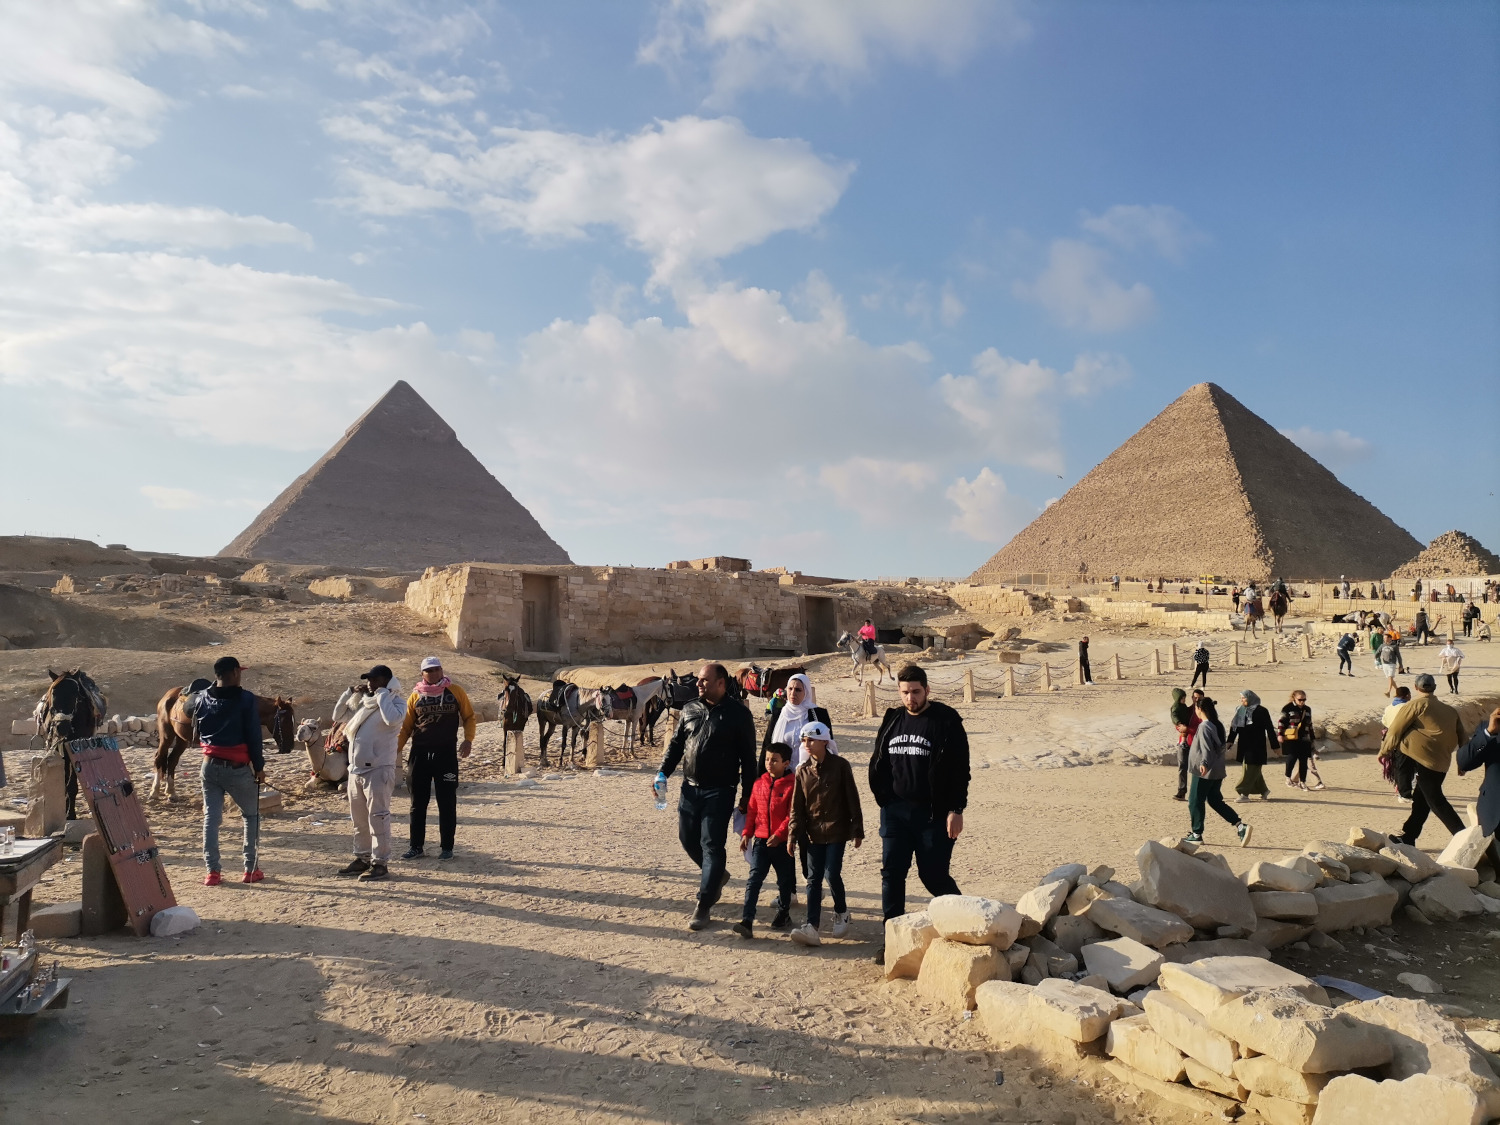 
Пирамиды экскурсия из Шарм эль Шейха